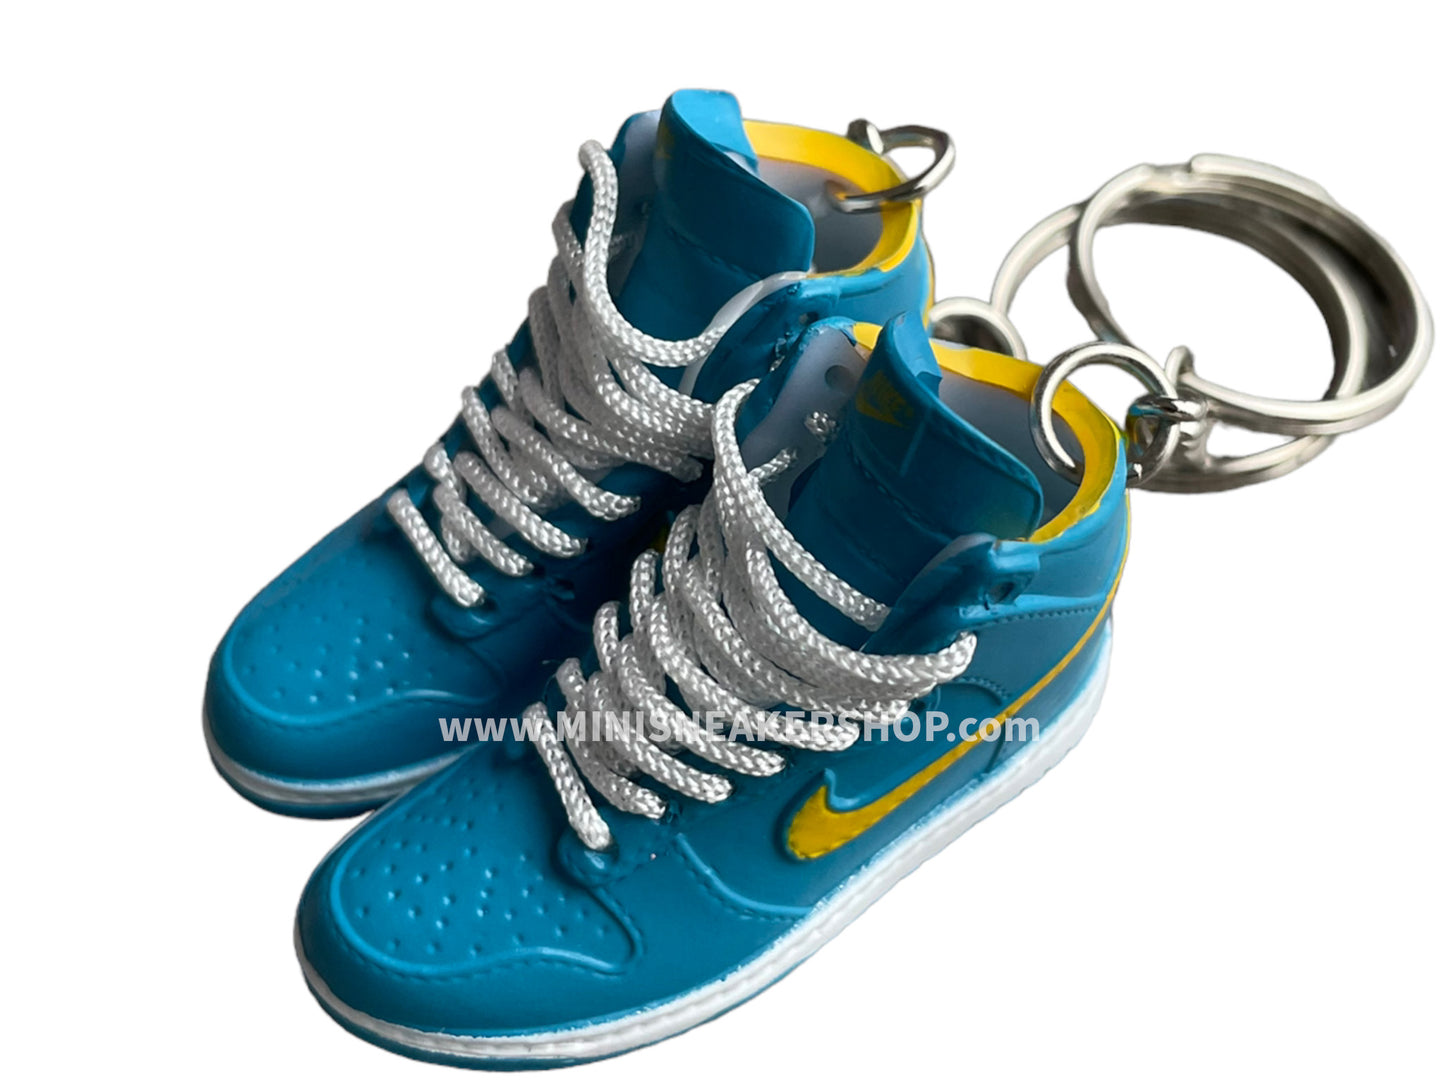 Mini sneaker keychain 3D Dunk - Blue Chill